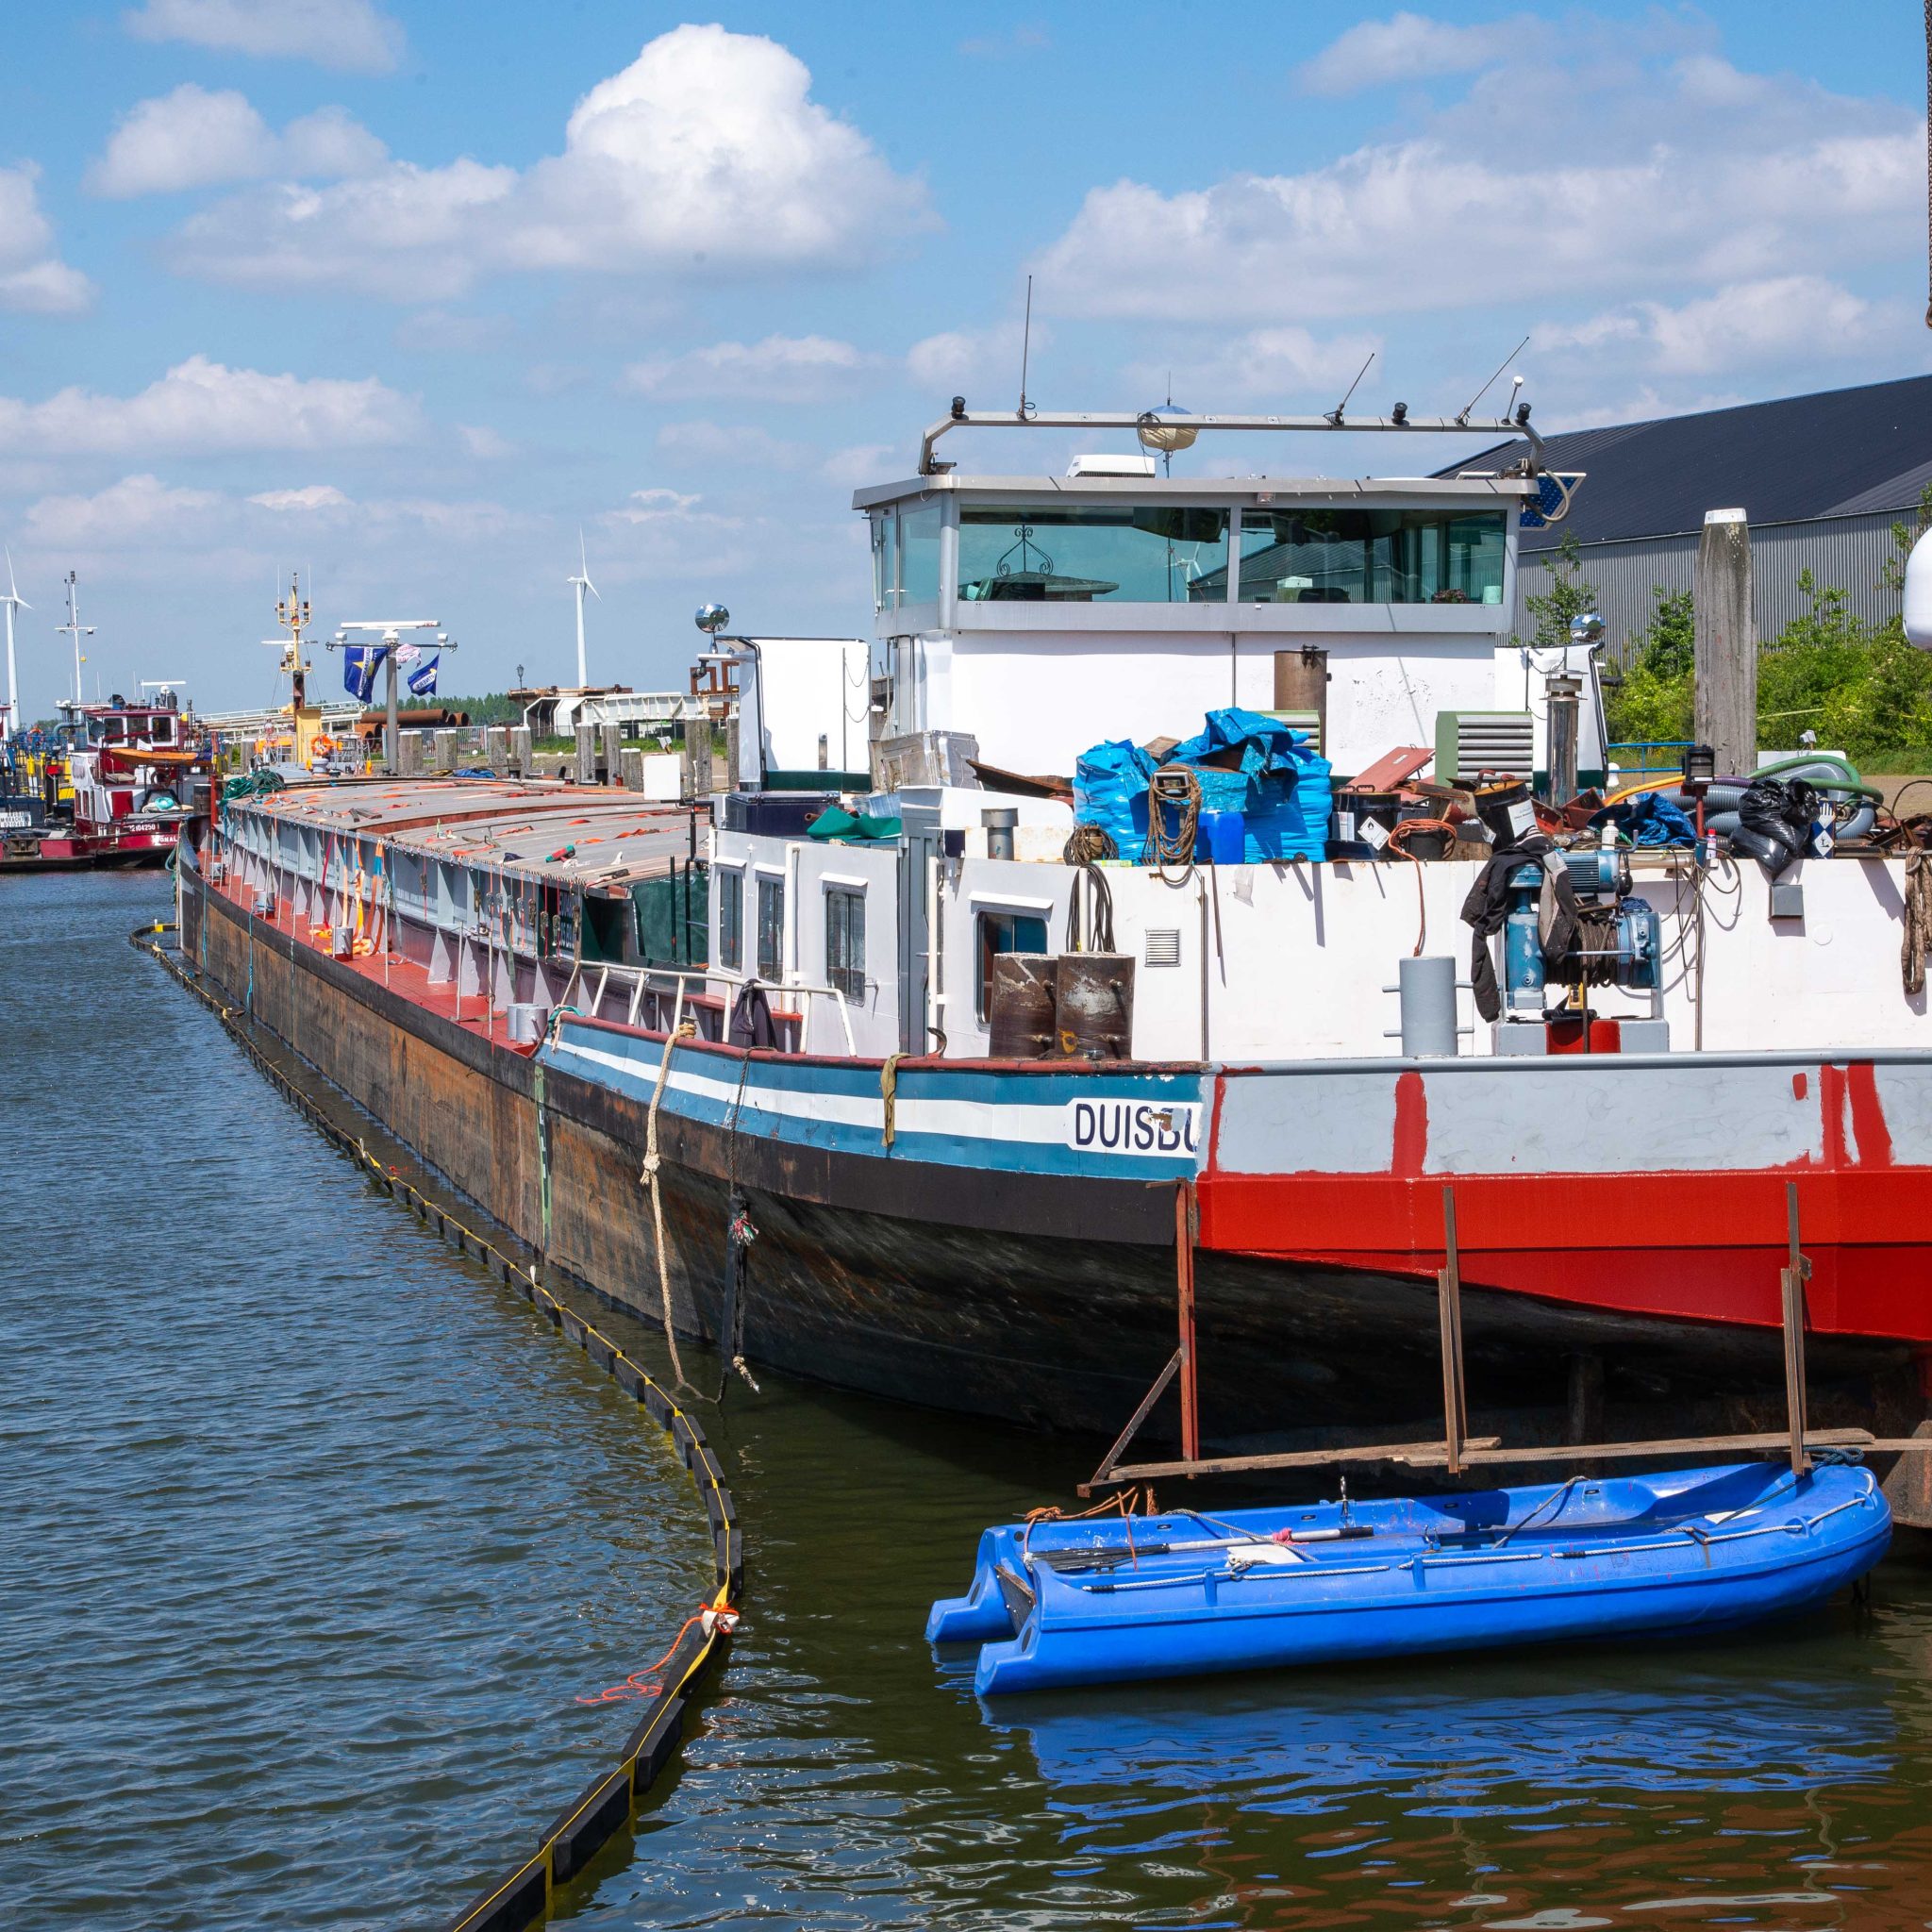 De Arsianco vorig jaar in de haven van Moerdijk. Als dekmantel voor de drugsproductie werd onderhoud aan het schip uitgevoerd. (Archieffoto Bart Oosterveld)